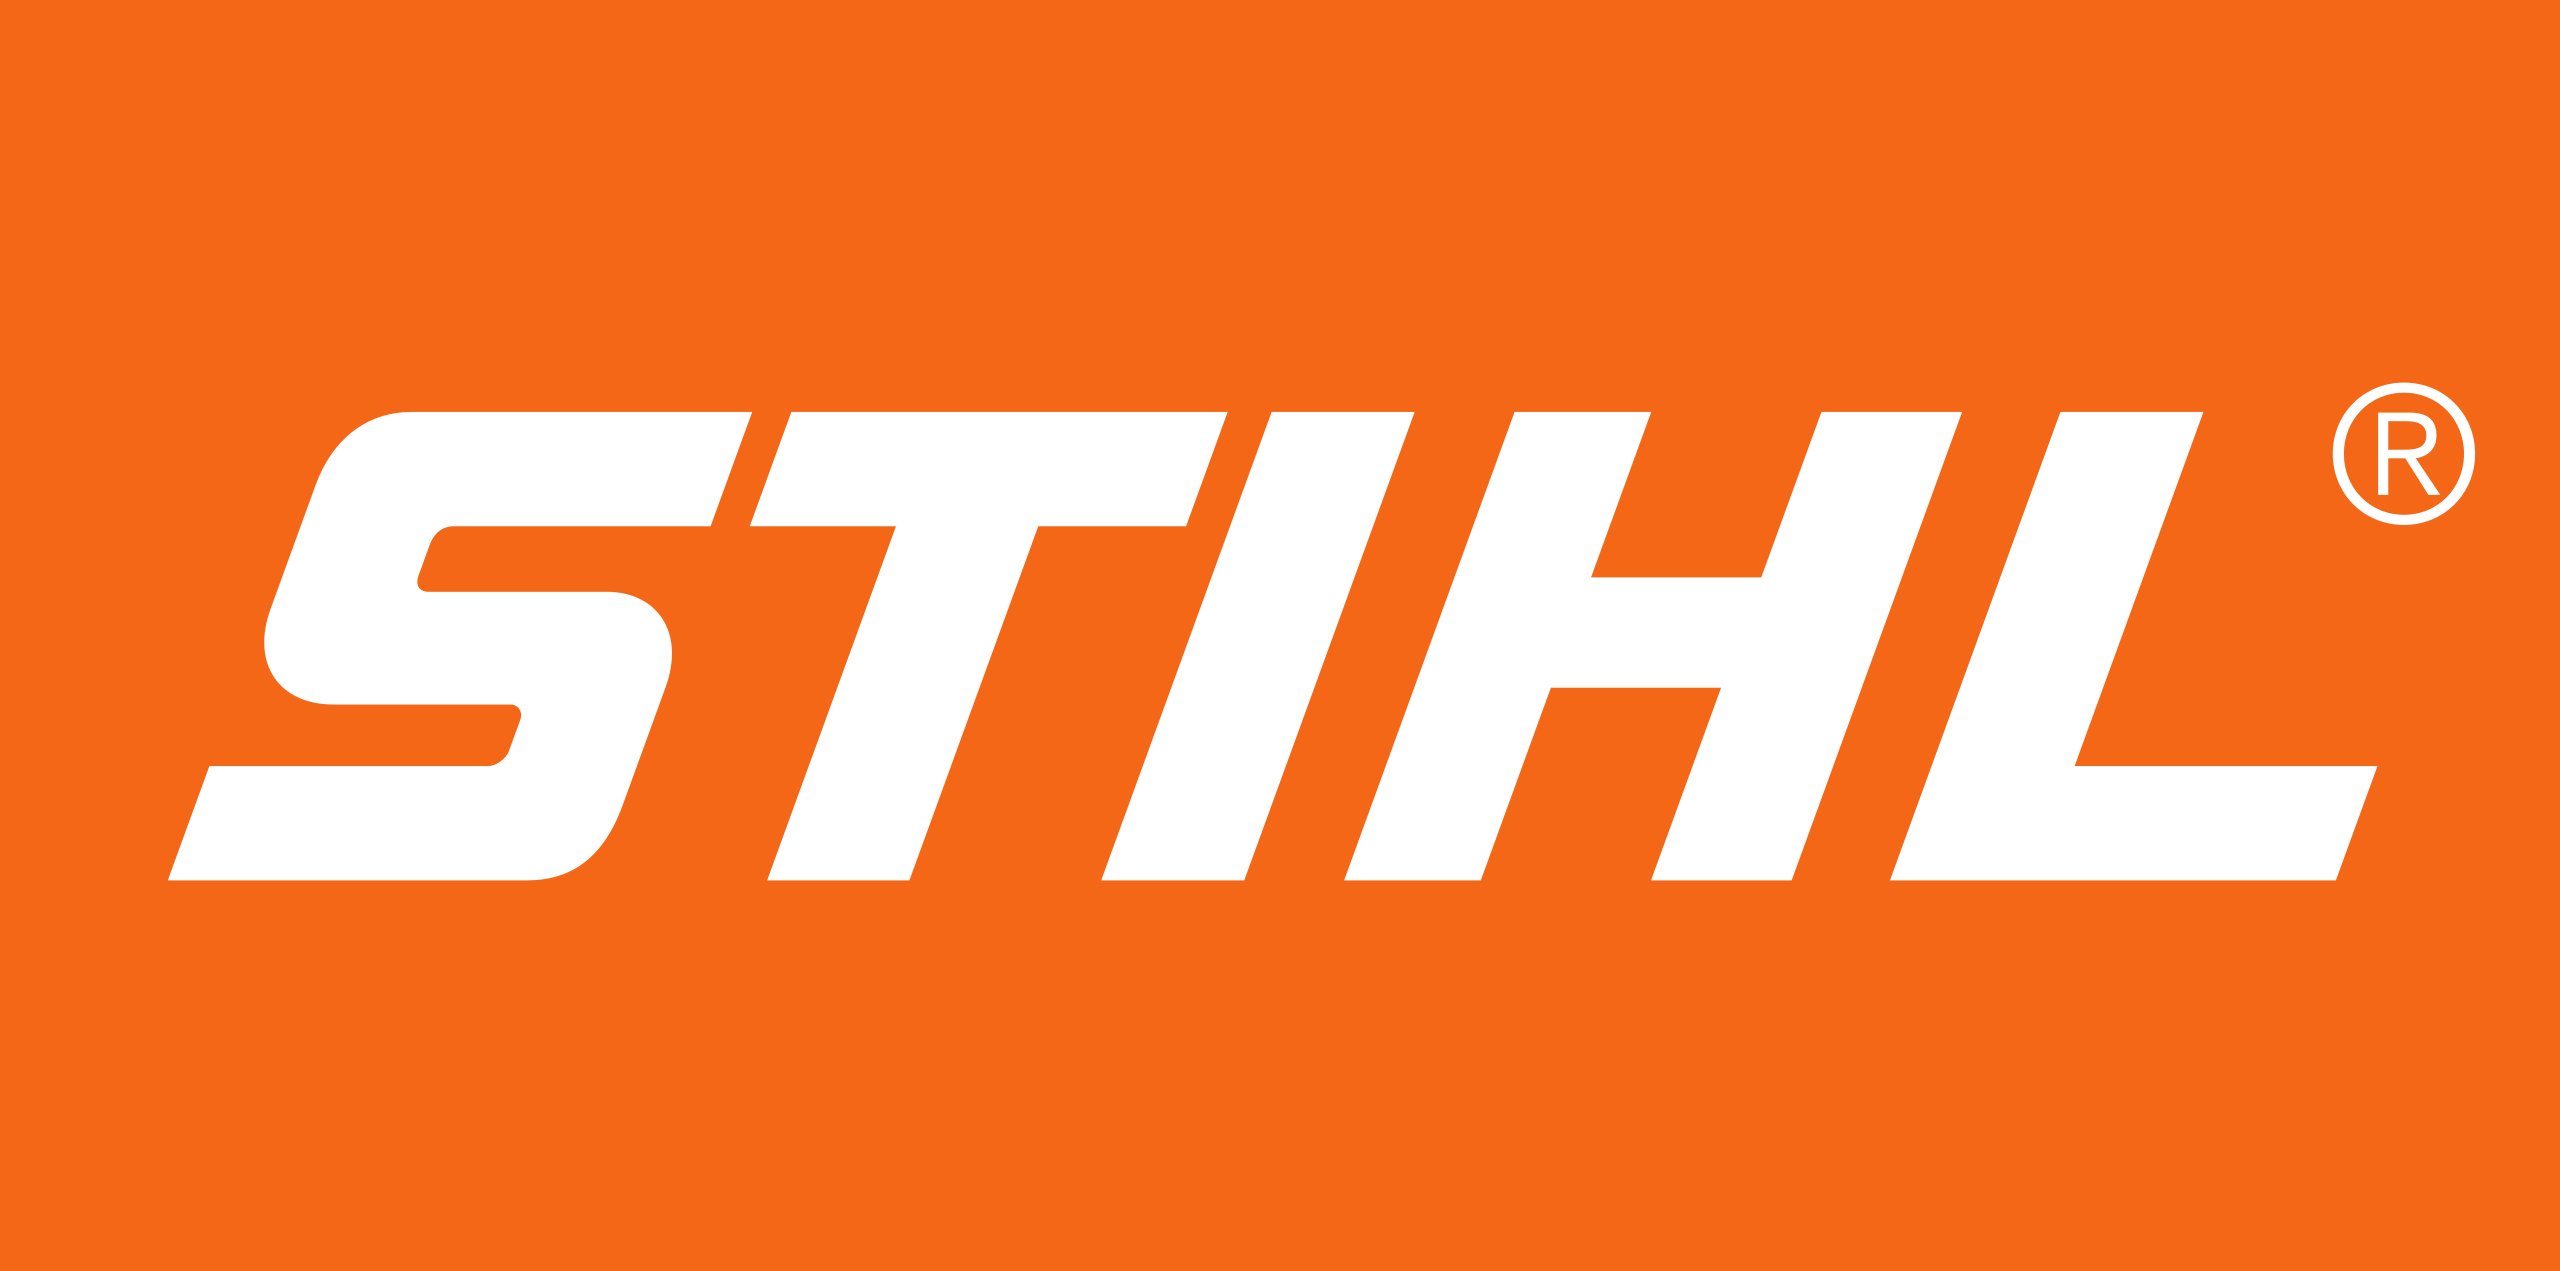 Logo - Stihl